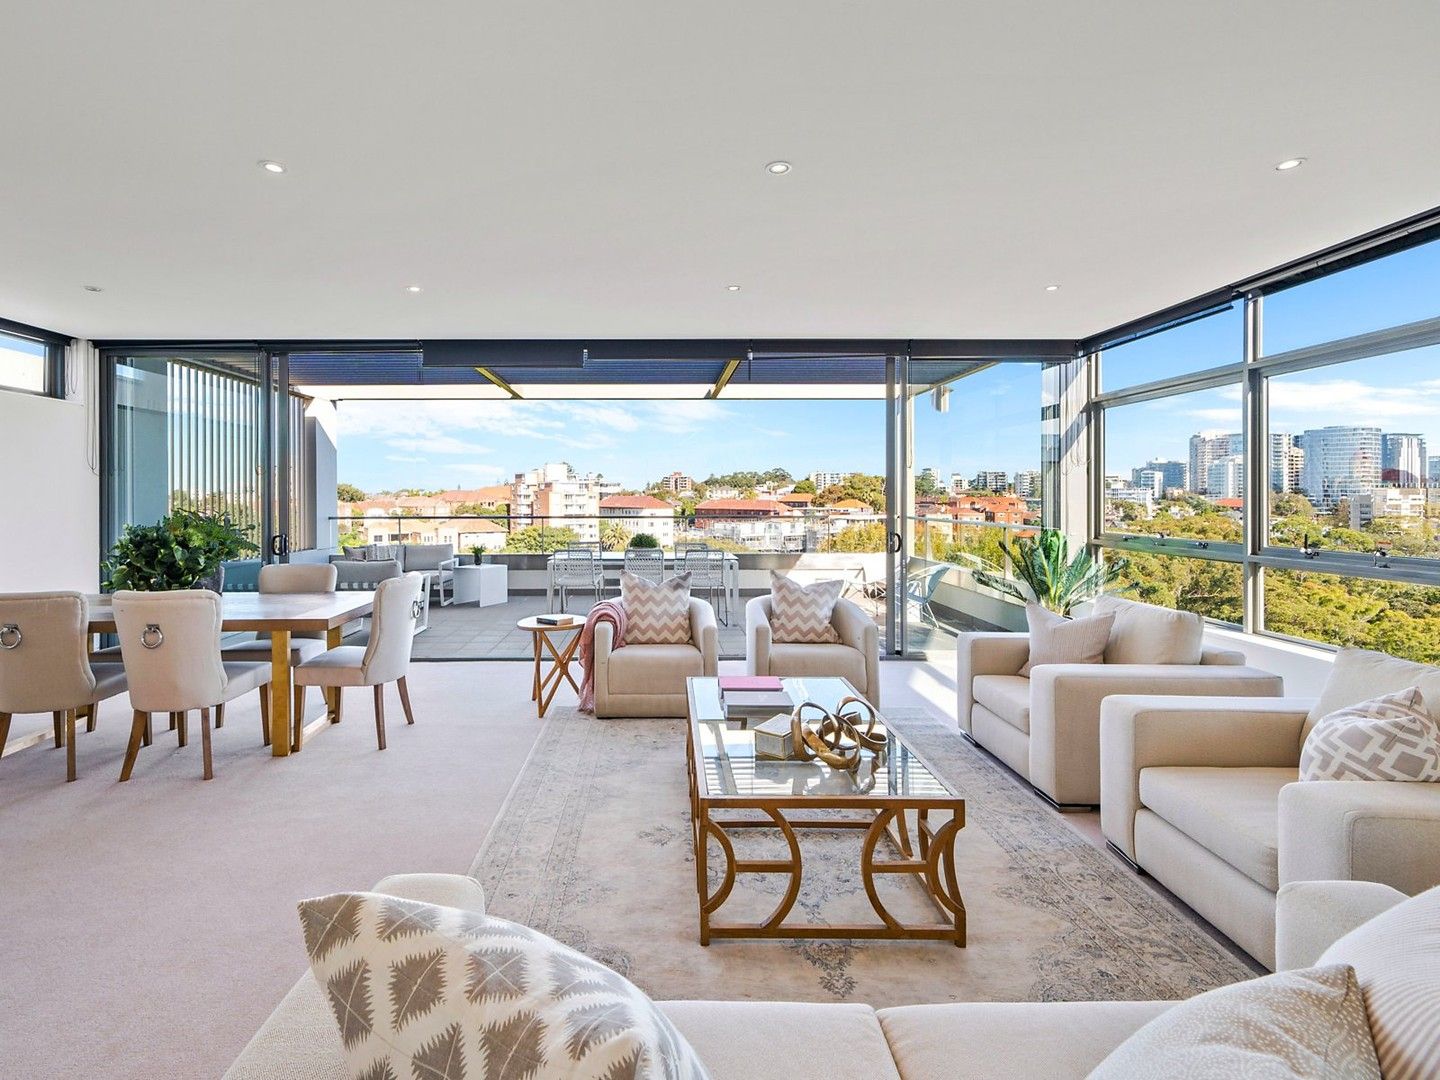 3 bedrooms Apartment / Unit / Flat in 21/8 Bellevue Road BELLEVUE HILL NSW, 2023